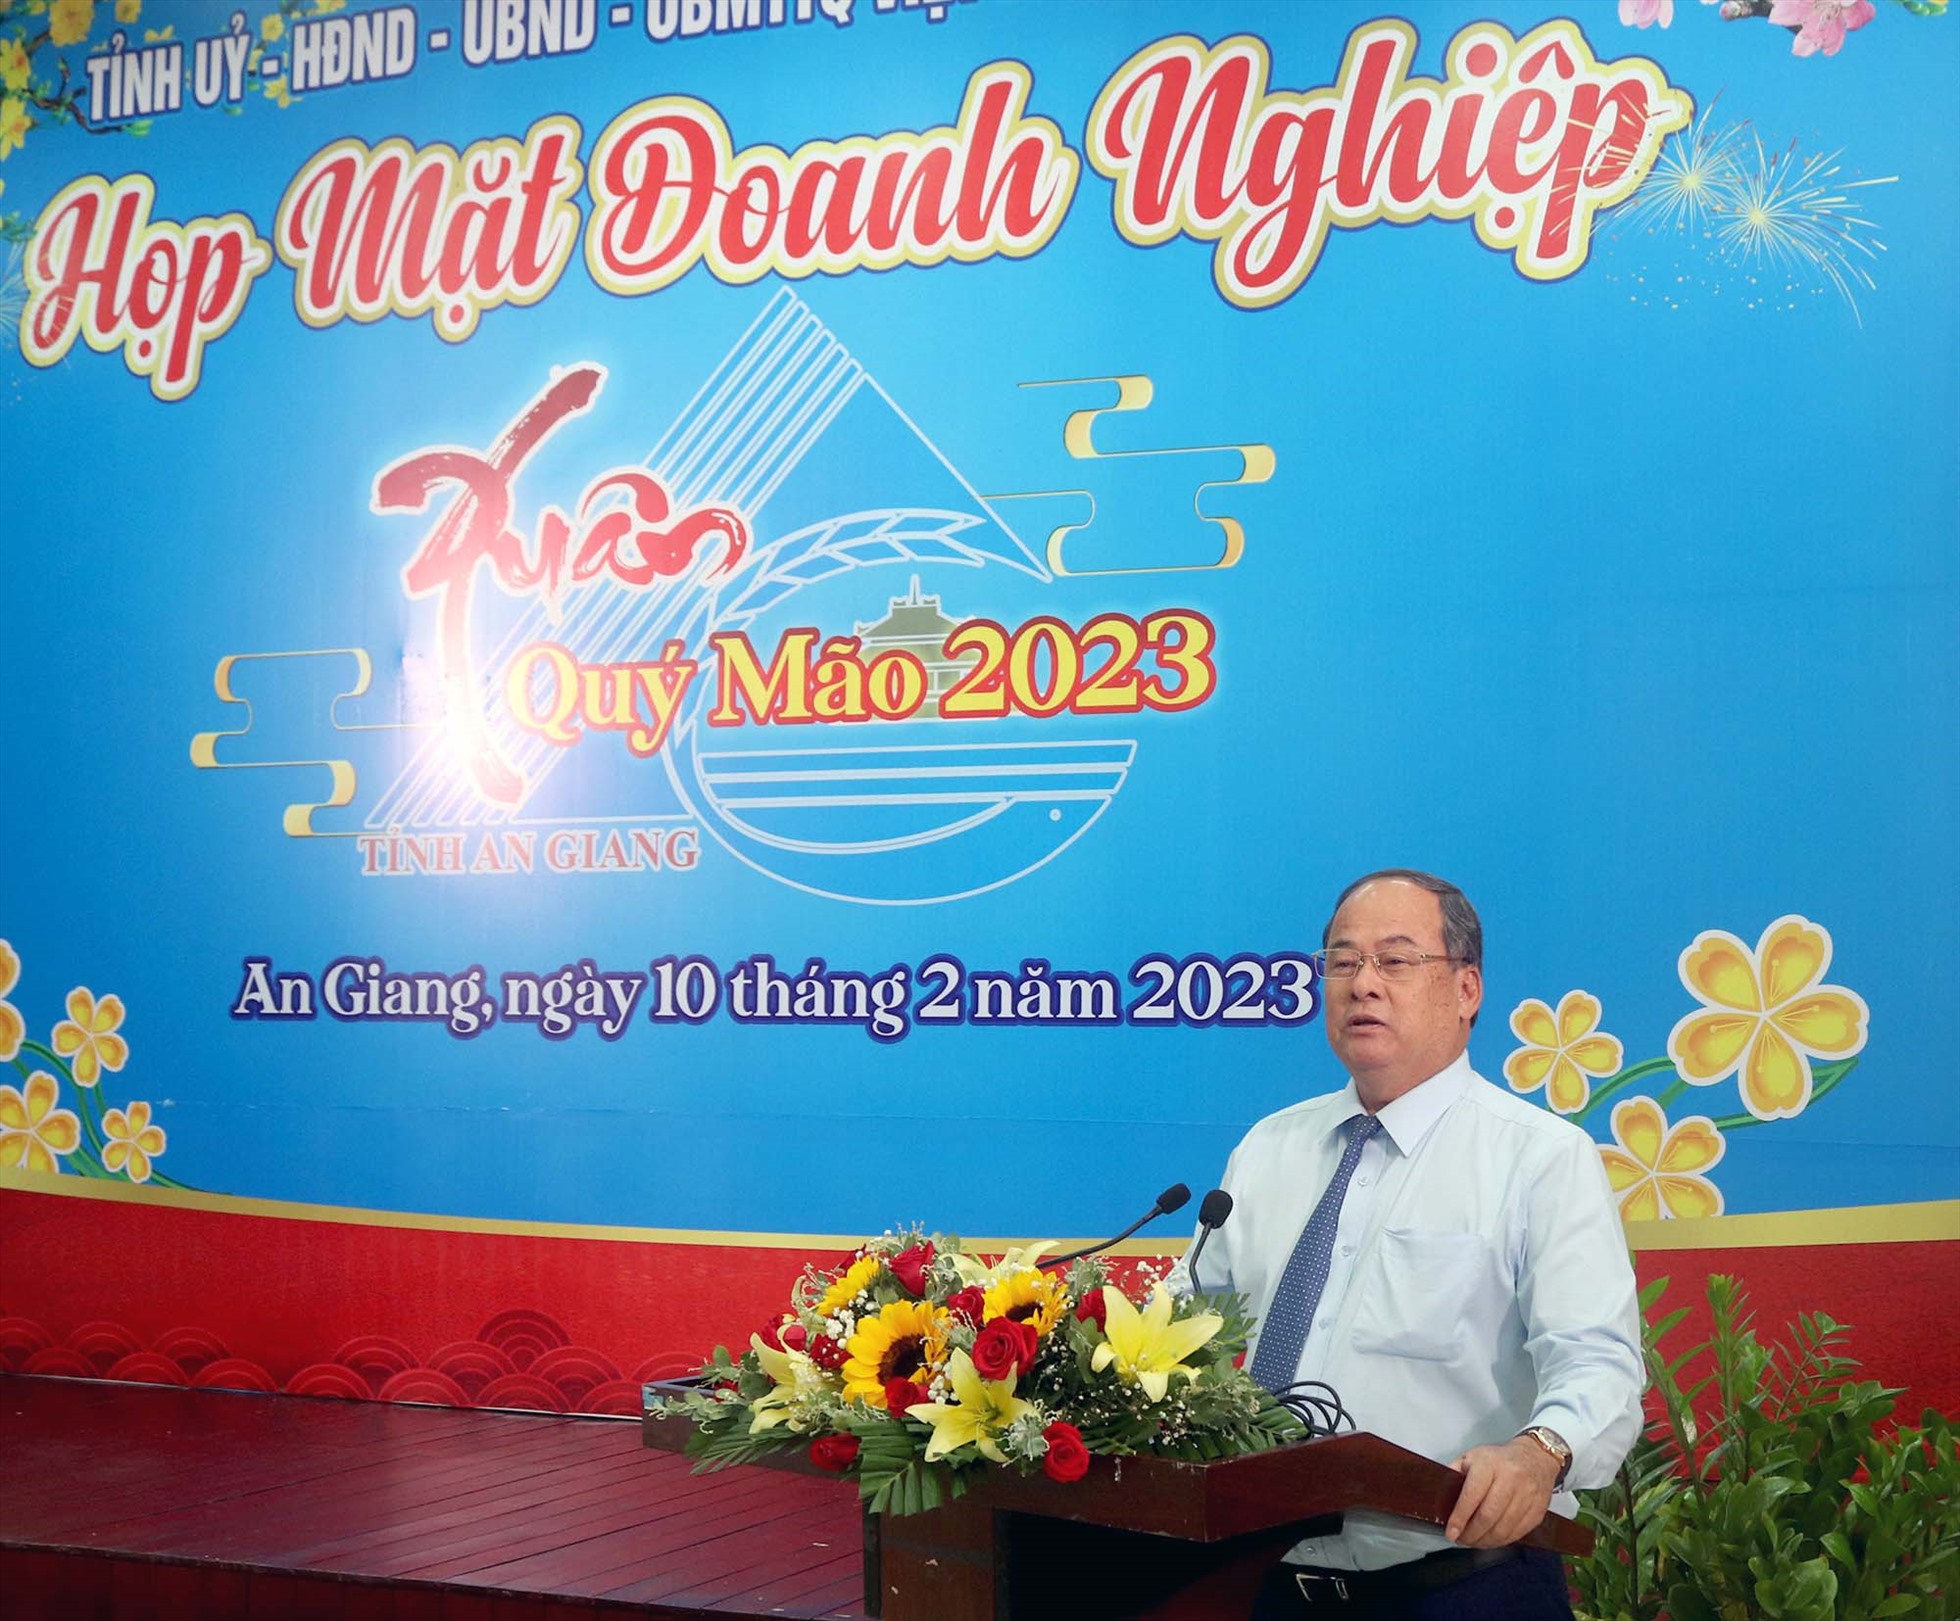 Ông Nguyễn Thanh Bình, Chủ tịch UBND tỉnh An Giang, phát biểu tại buổi họp mặt doanh nghiệp. Ảnh: Khu du lịch Cáp treo Núi Cấm